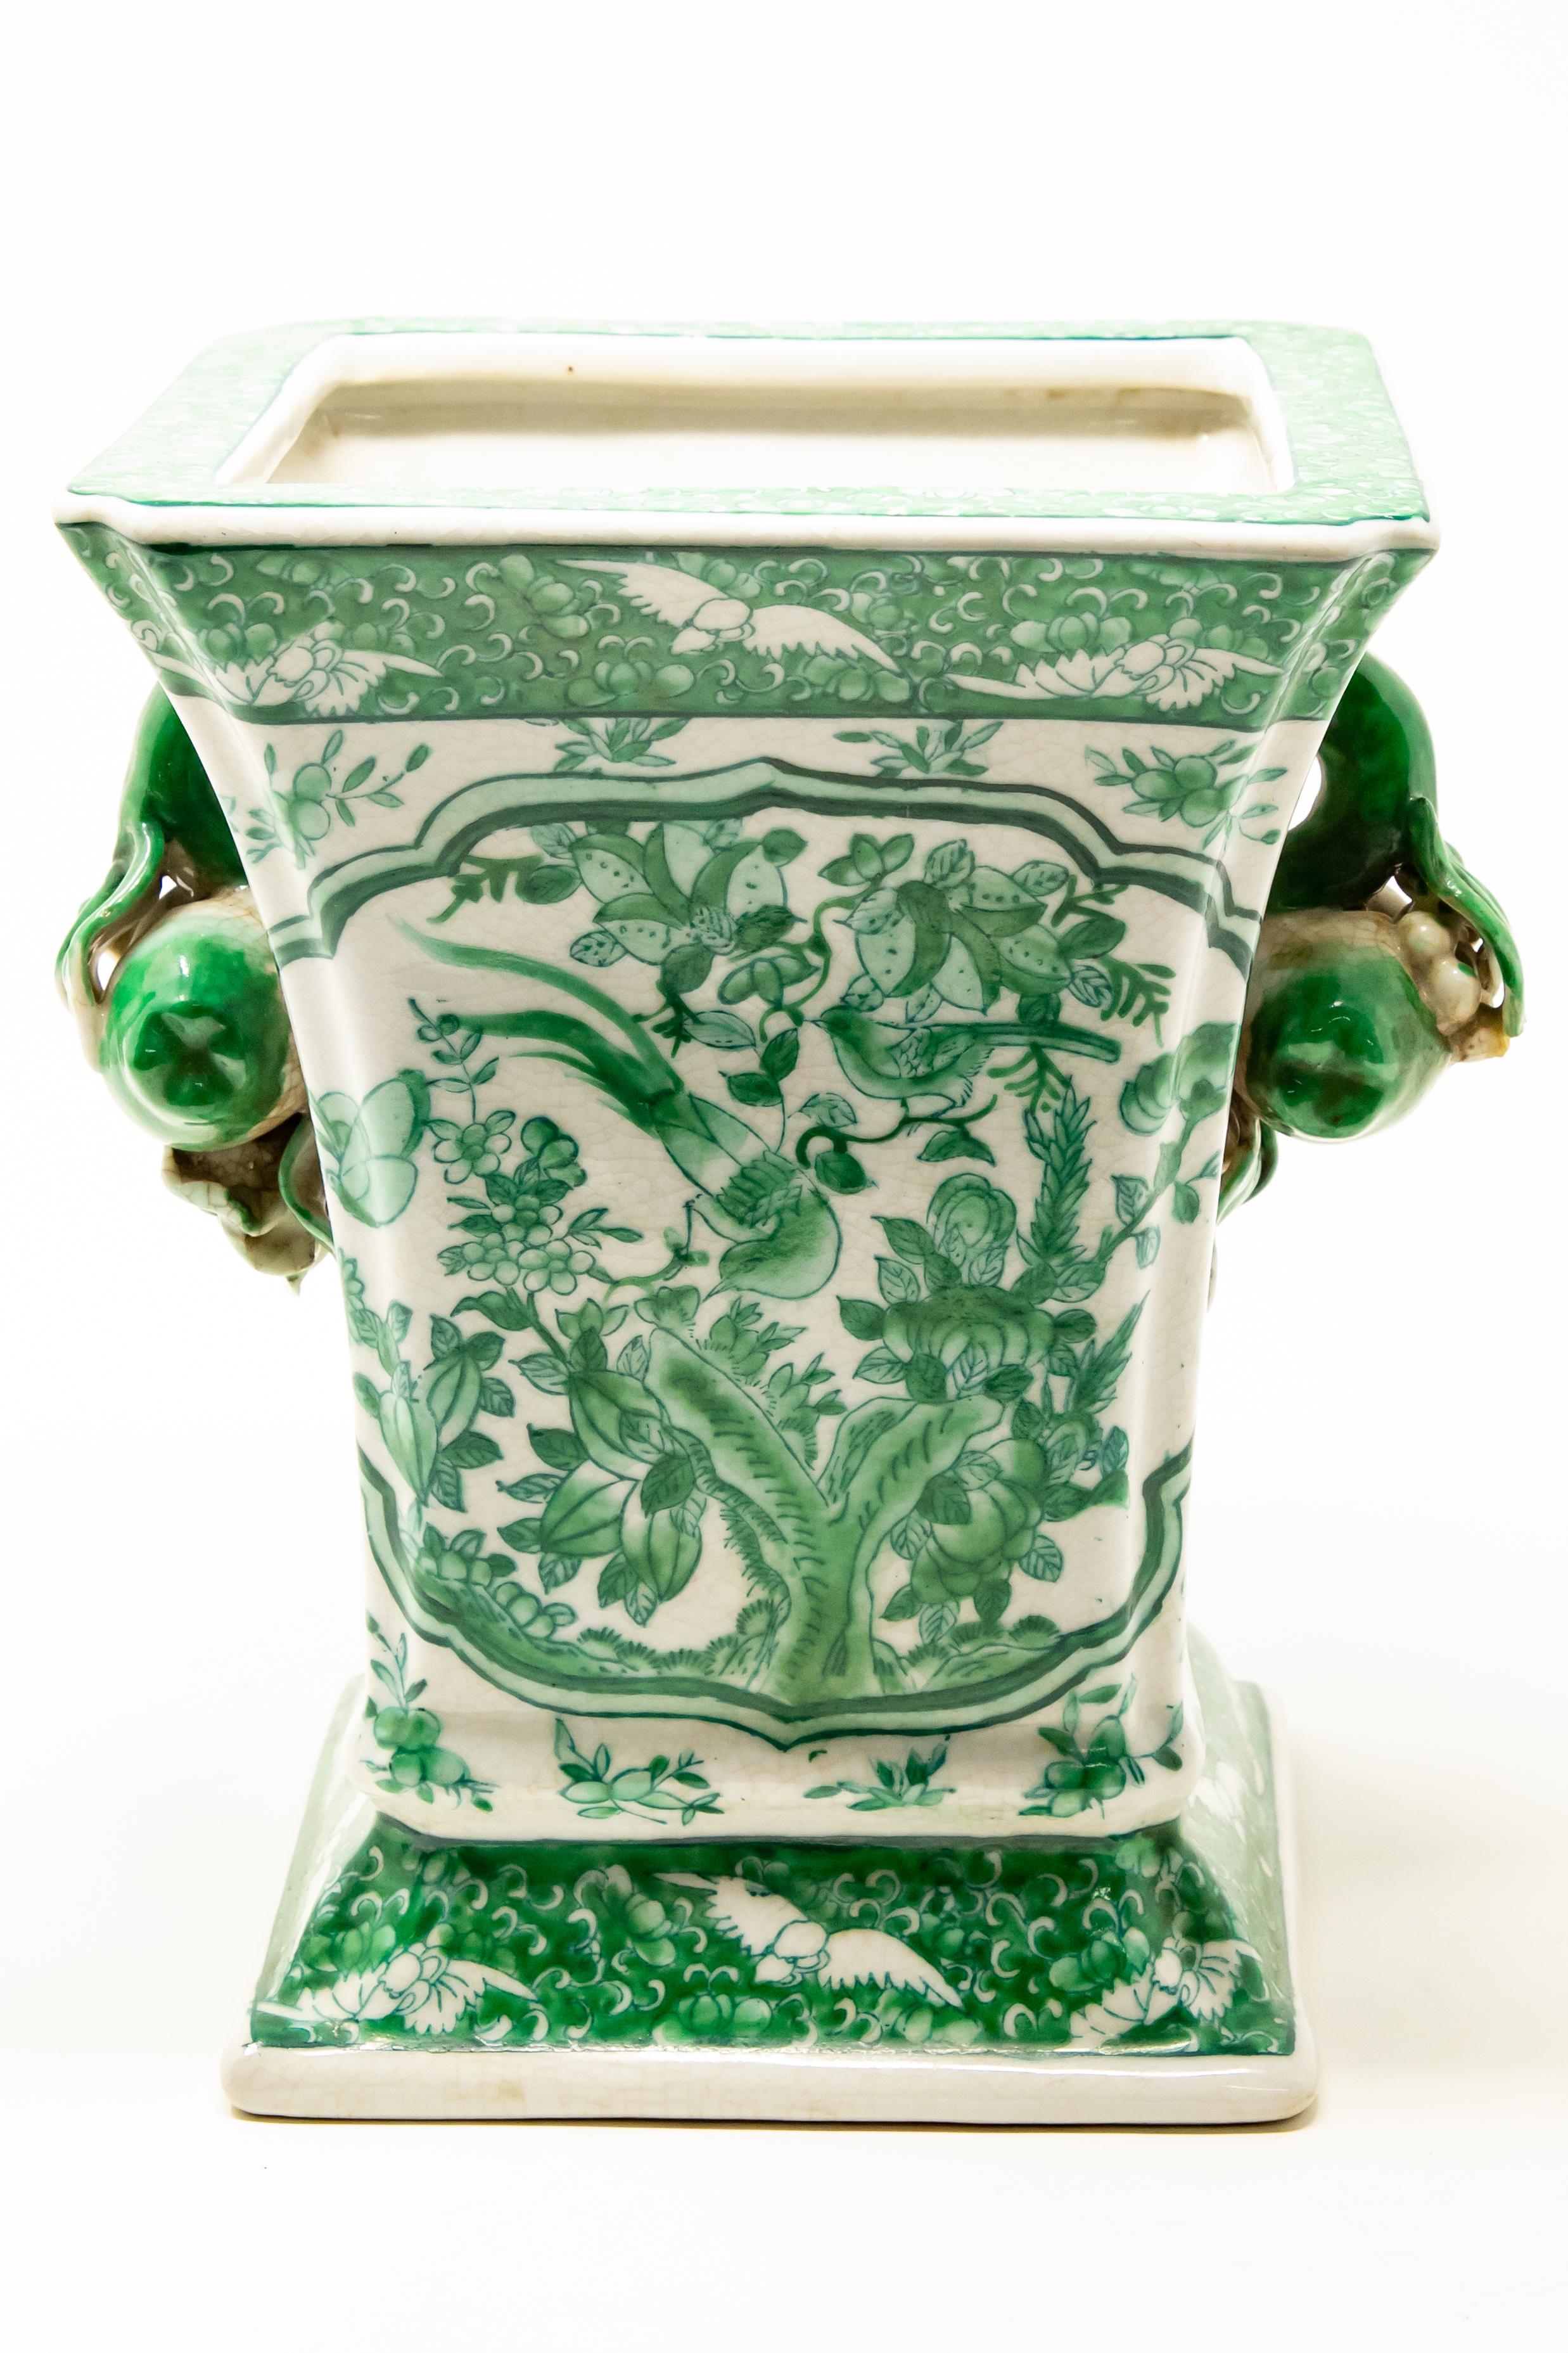 green and white porcelain vases